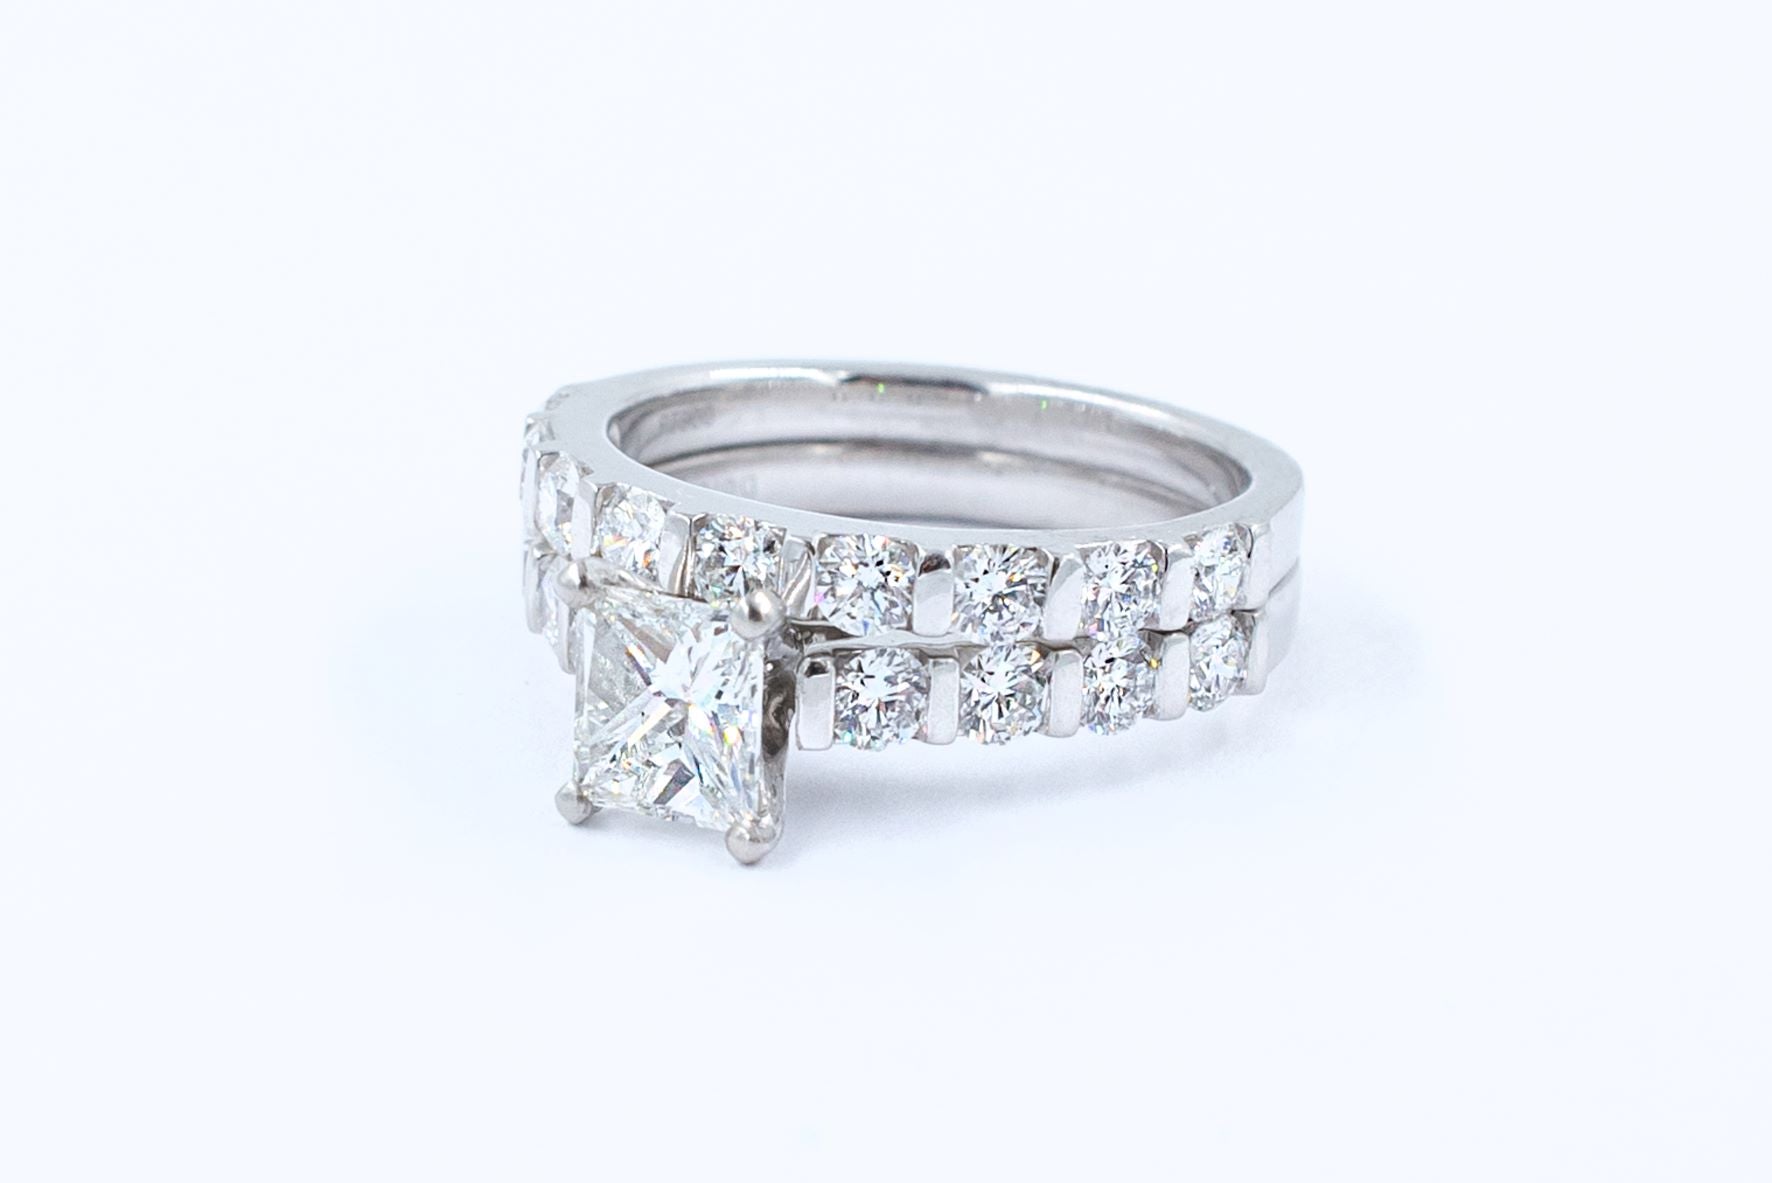 2.4 ctw Princess Cut Natural Diamond Wedding Ring Set